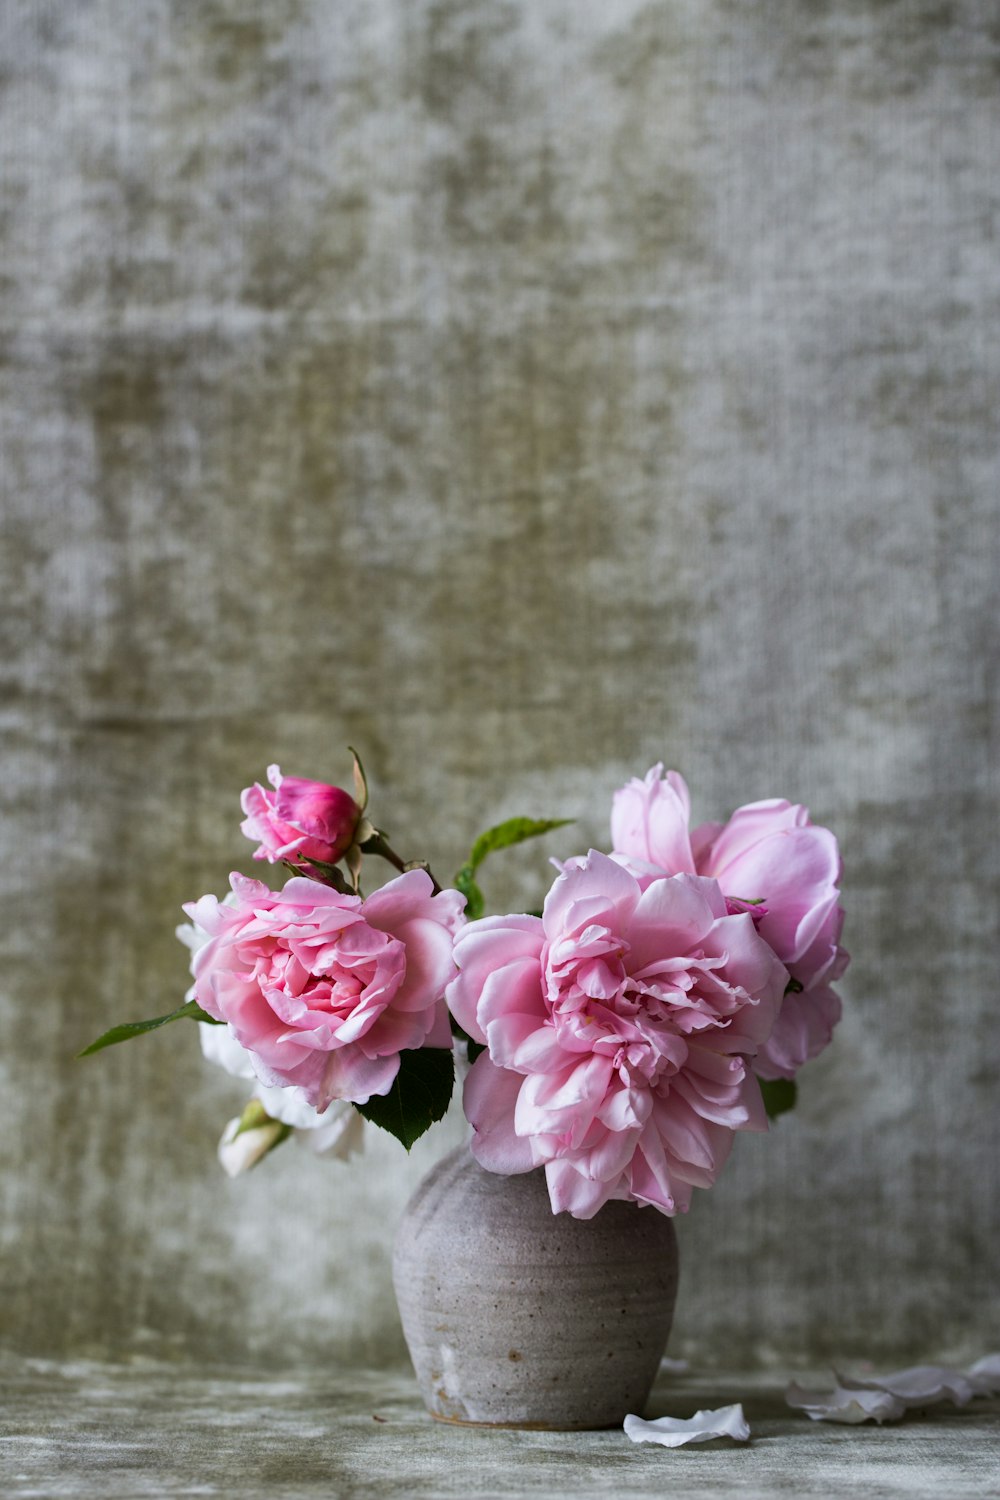 회색 세라믹 꽃병에 핑크 꽃